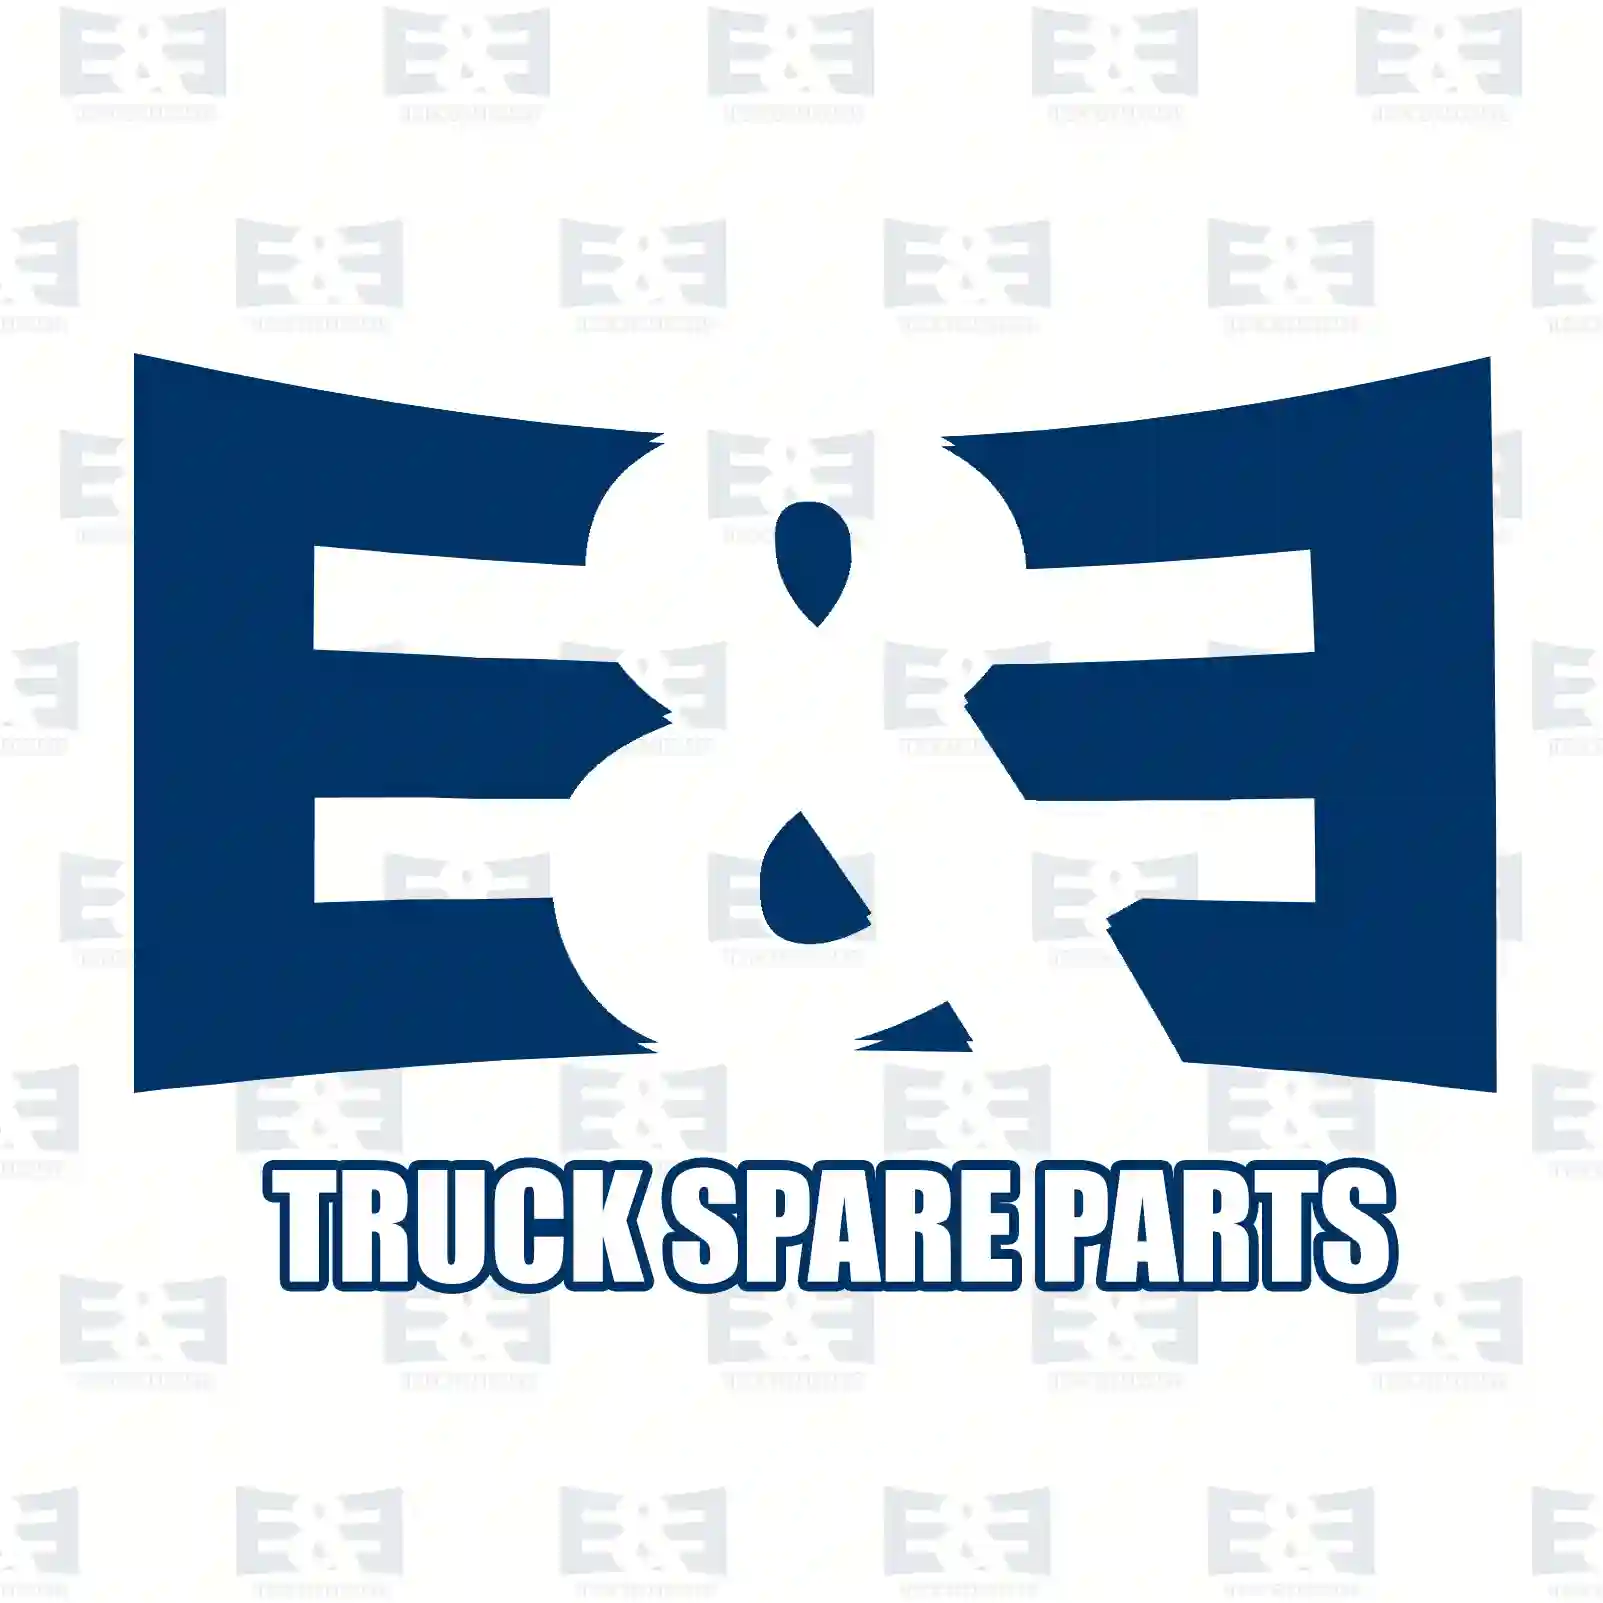 Repair kit, foot brake valve, 2E2295479, 0112305, 112305, 0005868643, 638771, 272571 ||  2E2295479 E&E Truck Spare Parts | Truck Spare Parts, Auotomotive Spare Parts Repair kit, foot brake valve, 2E2295479, 0112305, 112305, 0005868643, 638771, 272571 ||  2E2295479 E&E Truck Spare Parts | Truck Spare Parts, Auotomotive Spare Parts